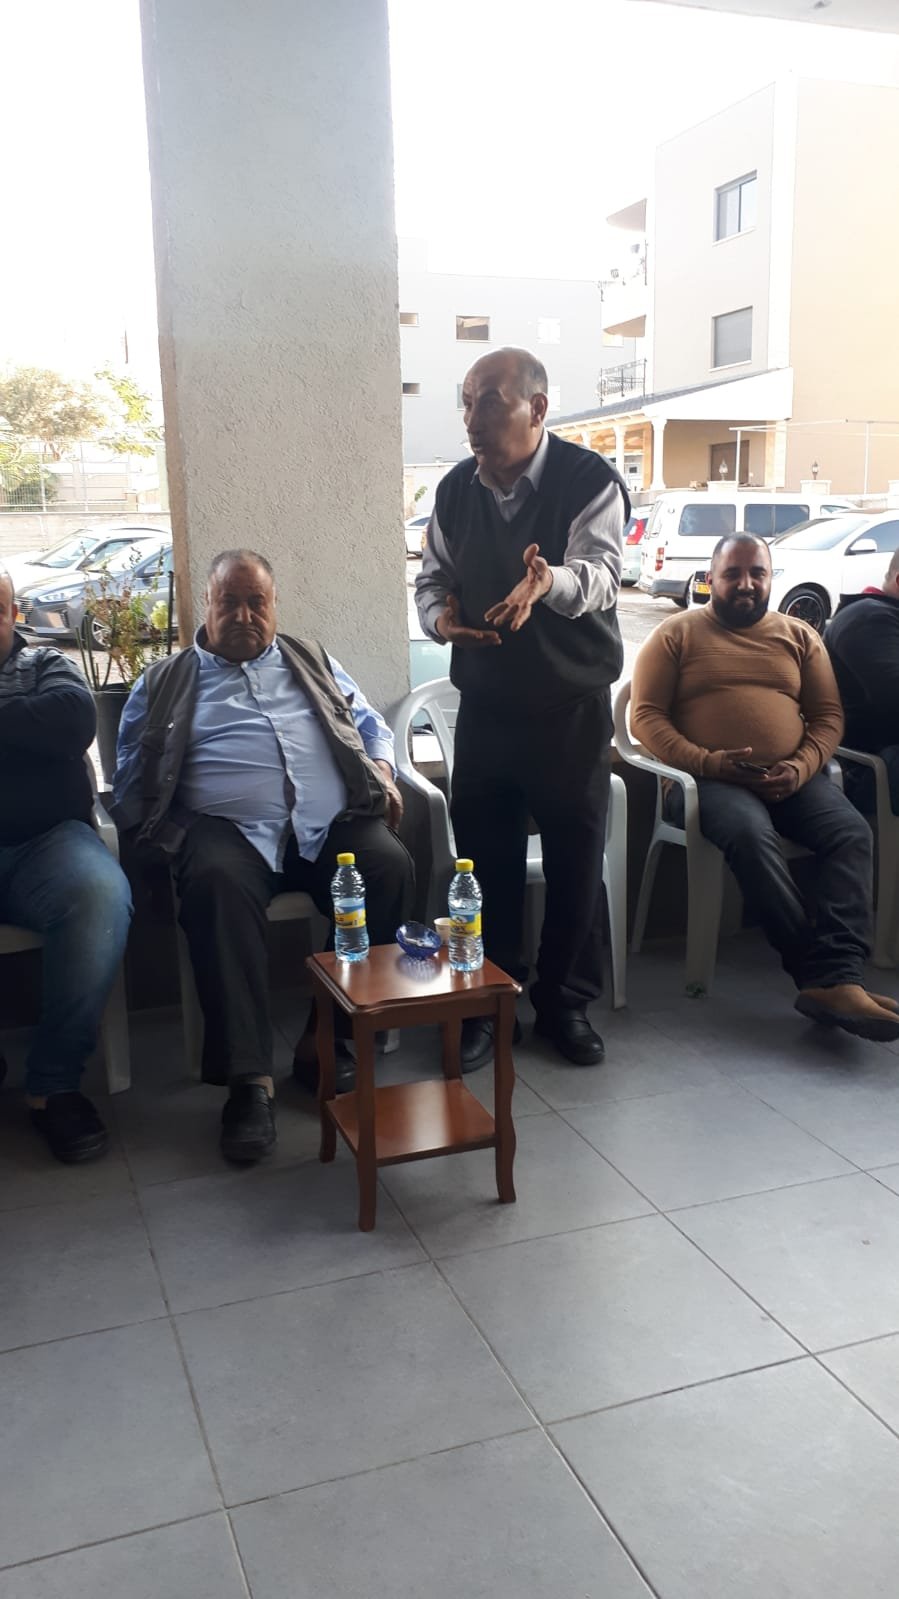 التفاف شعبي واضح حول حزب معا في الناصرة اكسال ويافة-14